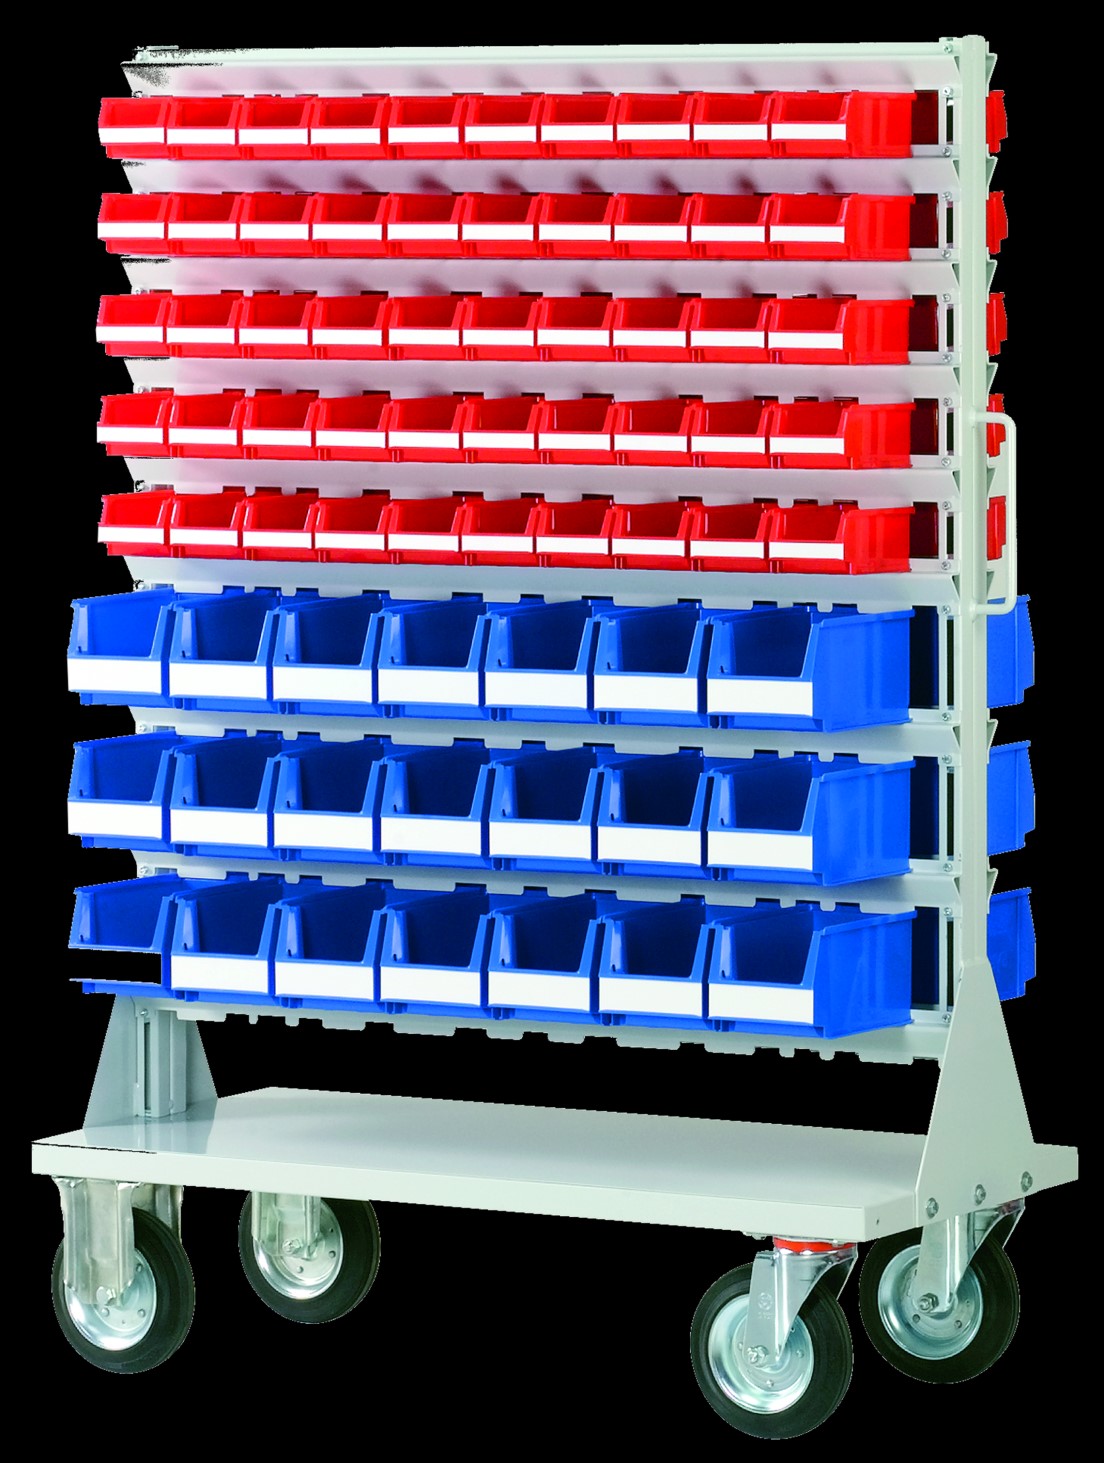 Komplettsystem Sichtlagerkästen Ständerregale und Fahrregale abgestimmt auf das Sicht- blau rot grün gelb transparent kastensystem erleichtern den Transport von Kleinteilen im Betrieb.